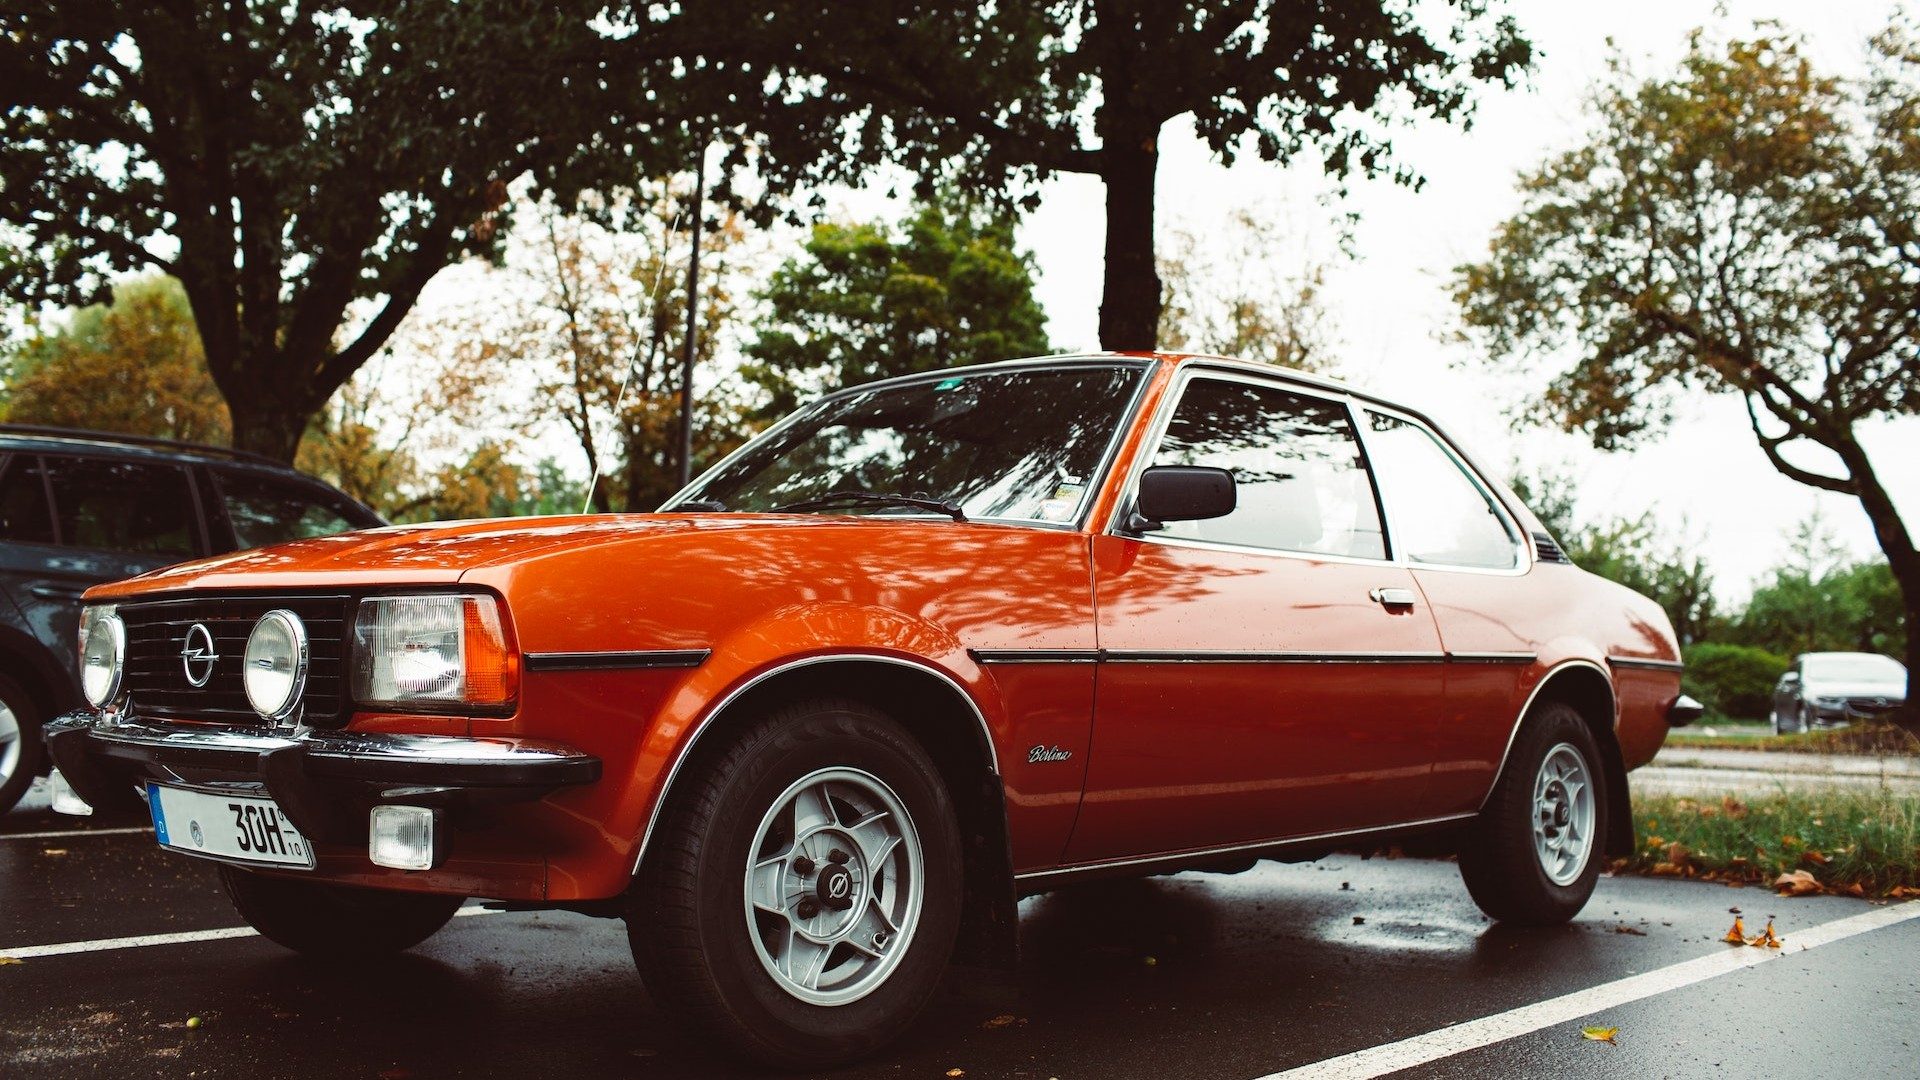 Ein oranger Oldtimer der Stellantis-Marke Opel auf einem Parkplatz